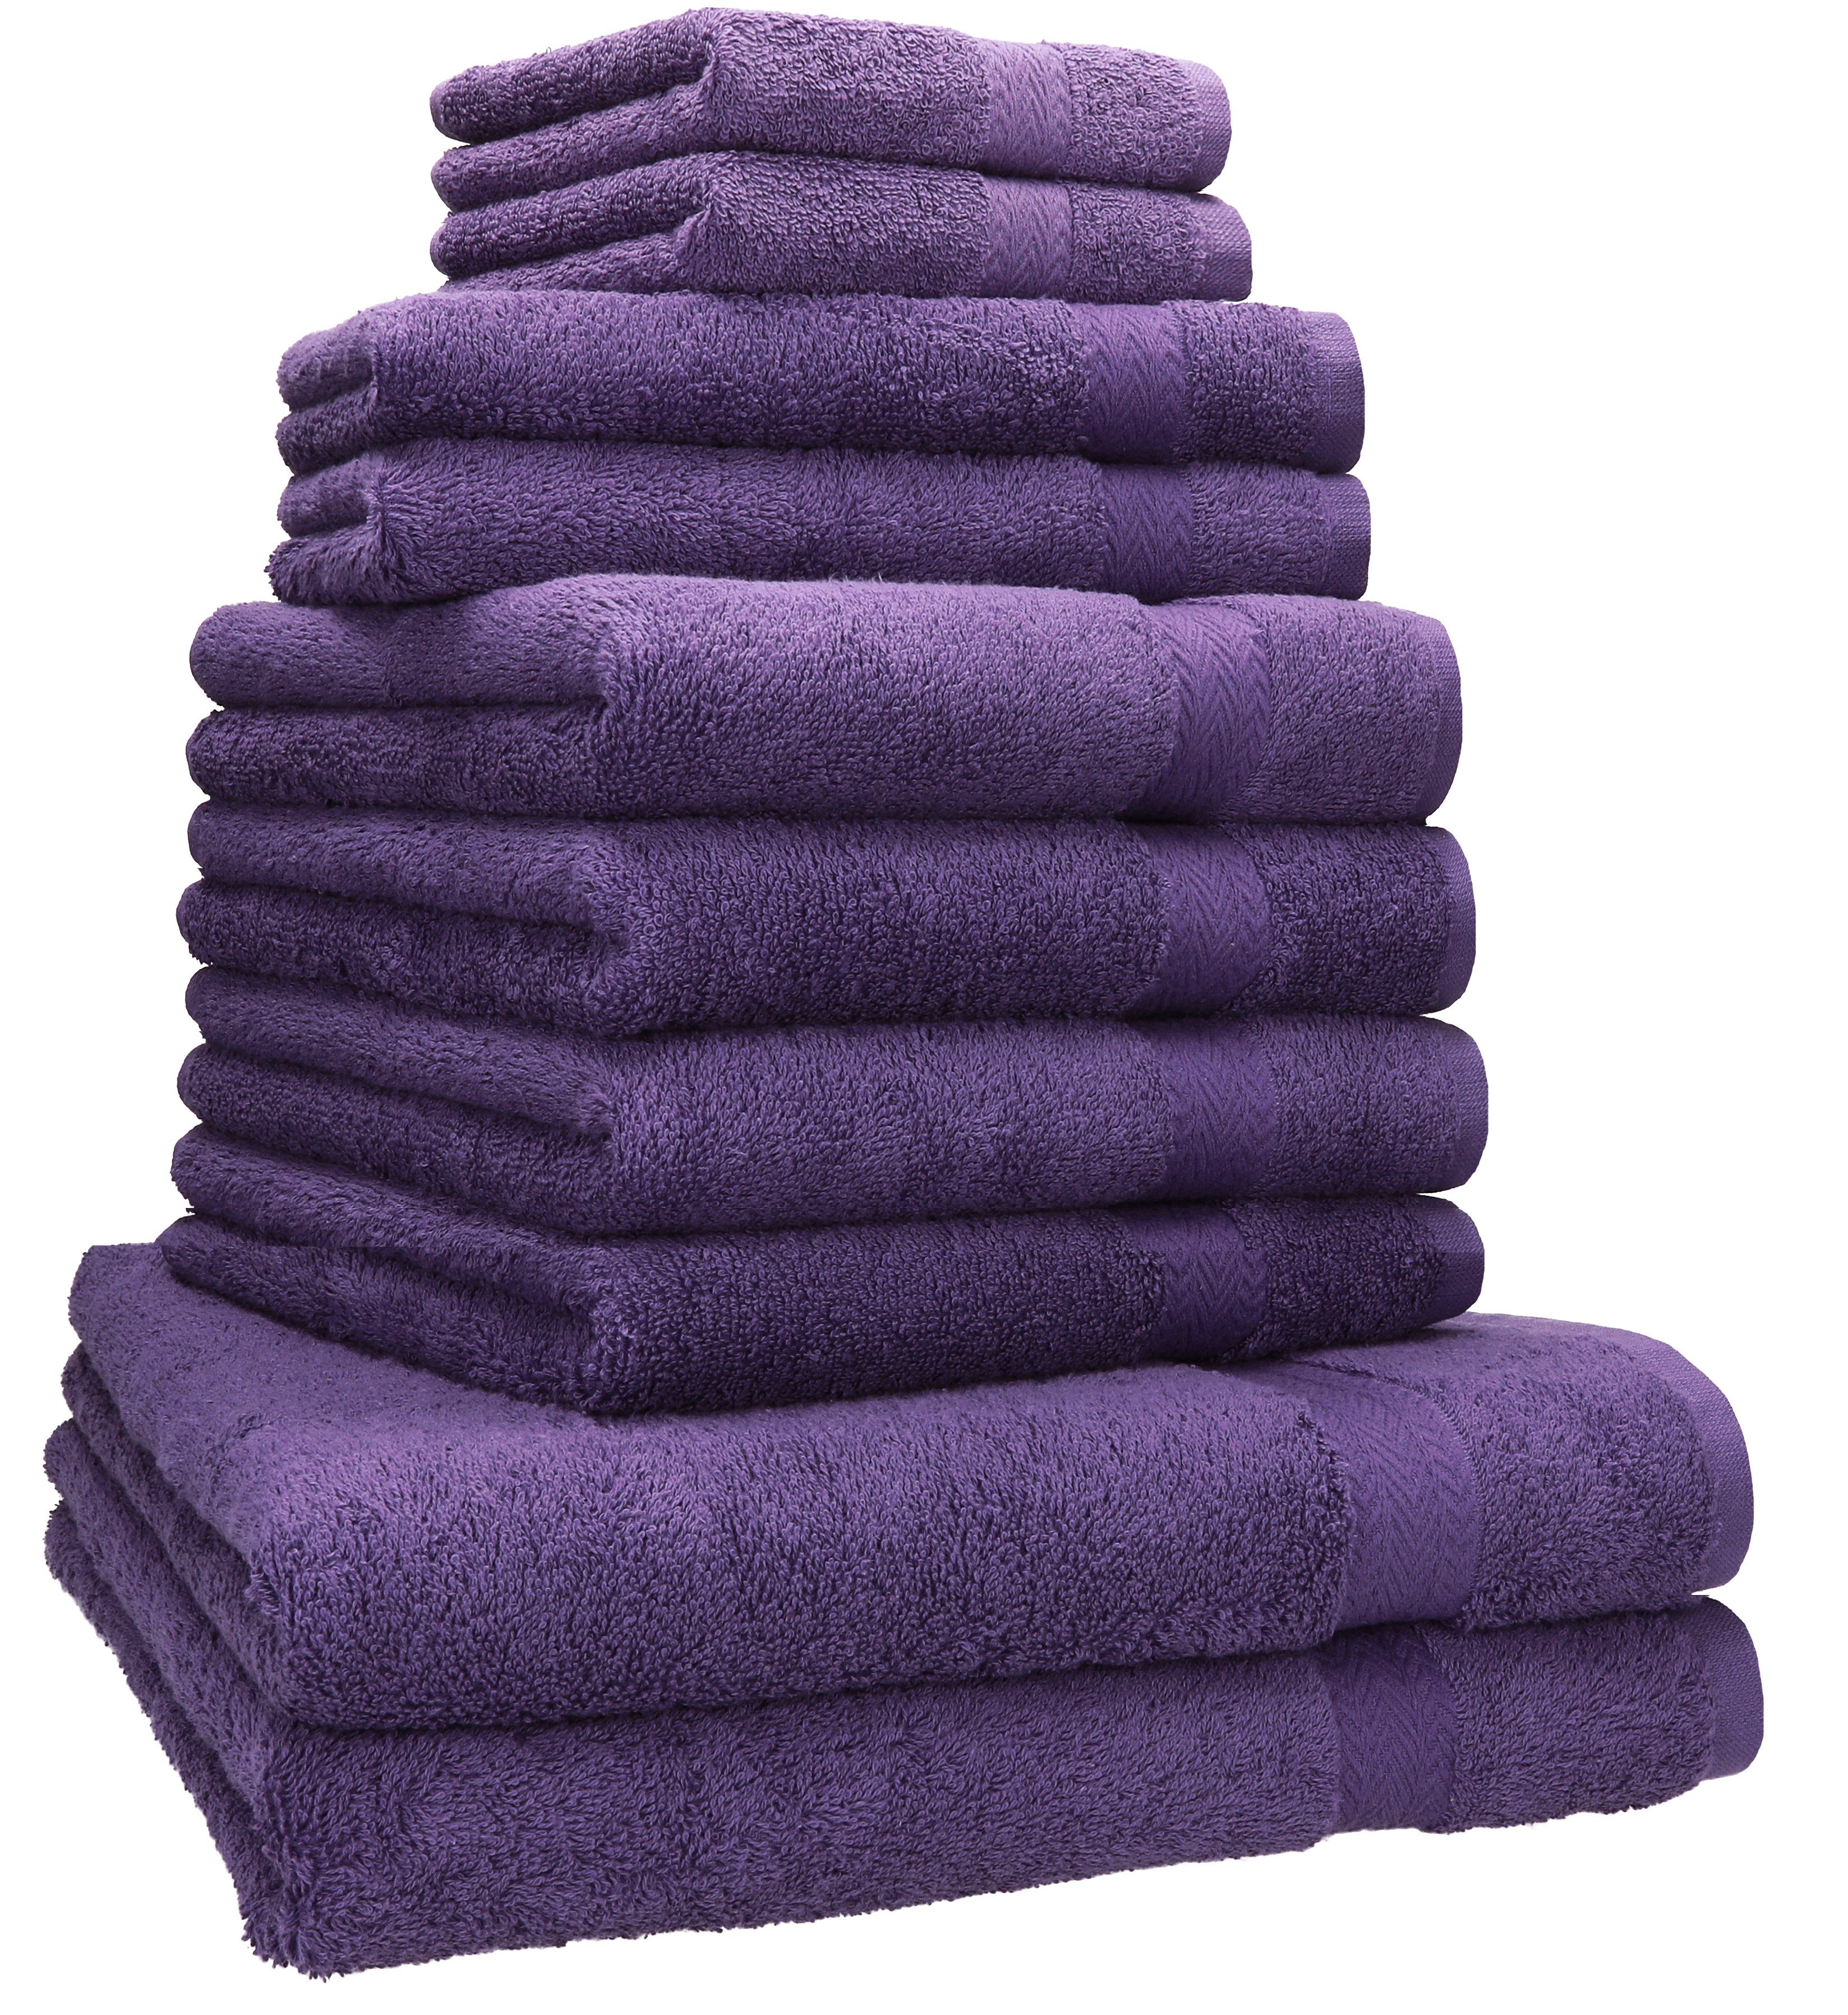 Baumwolle, Handtücher lila Handtuch-Set Gästetücher Baumwolle Duschtücher 100% Handtuch 4 (10-tlg) 2 Set 2 Seiftücher, 10-TLG. Betz 100% 2 Classic